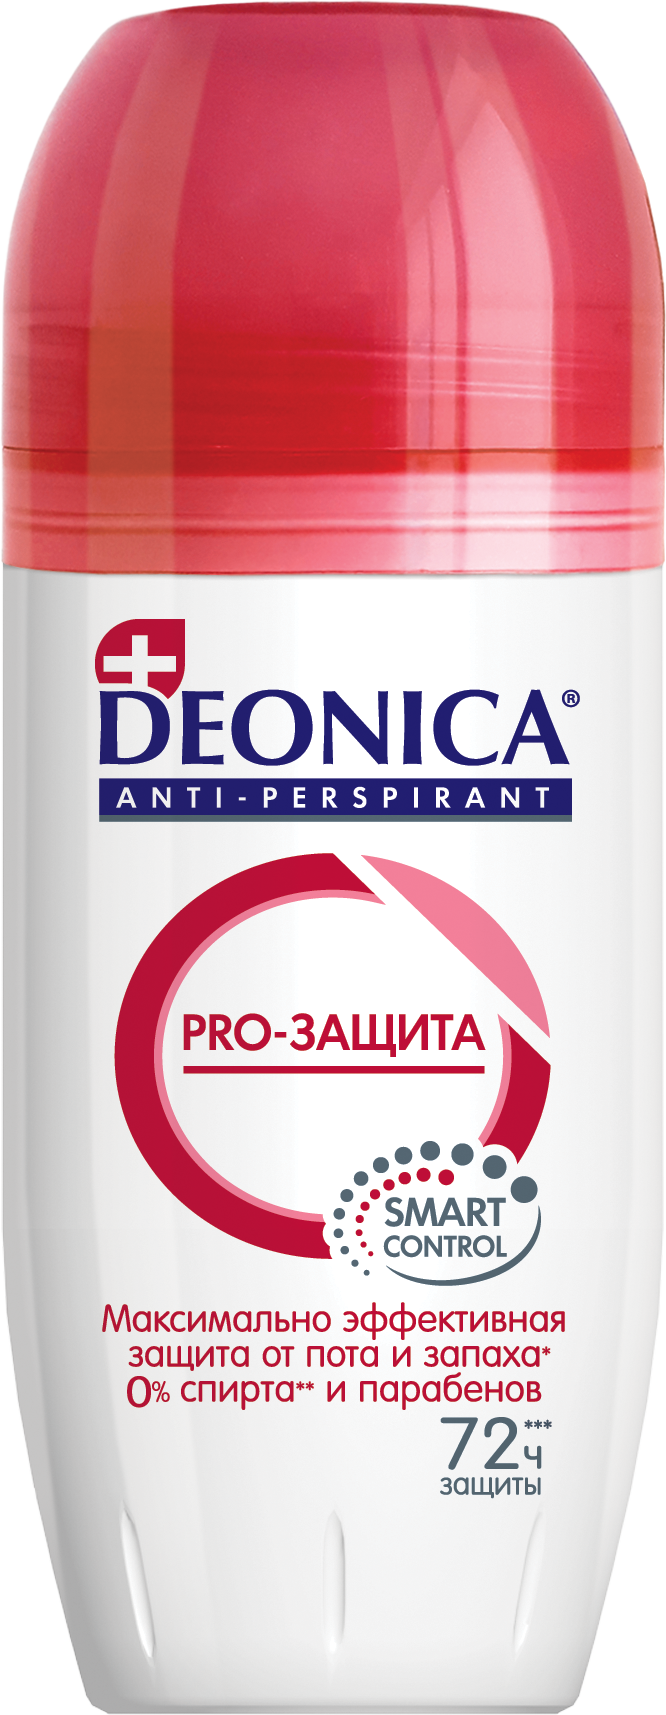 фото упаковки Deonica Антиперспирант Pro-защита